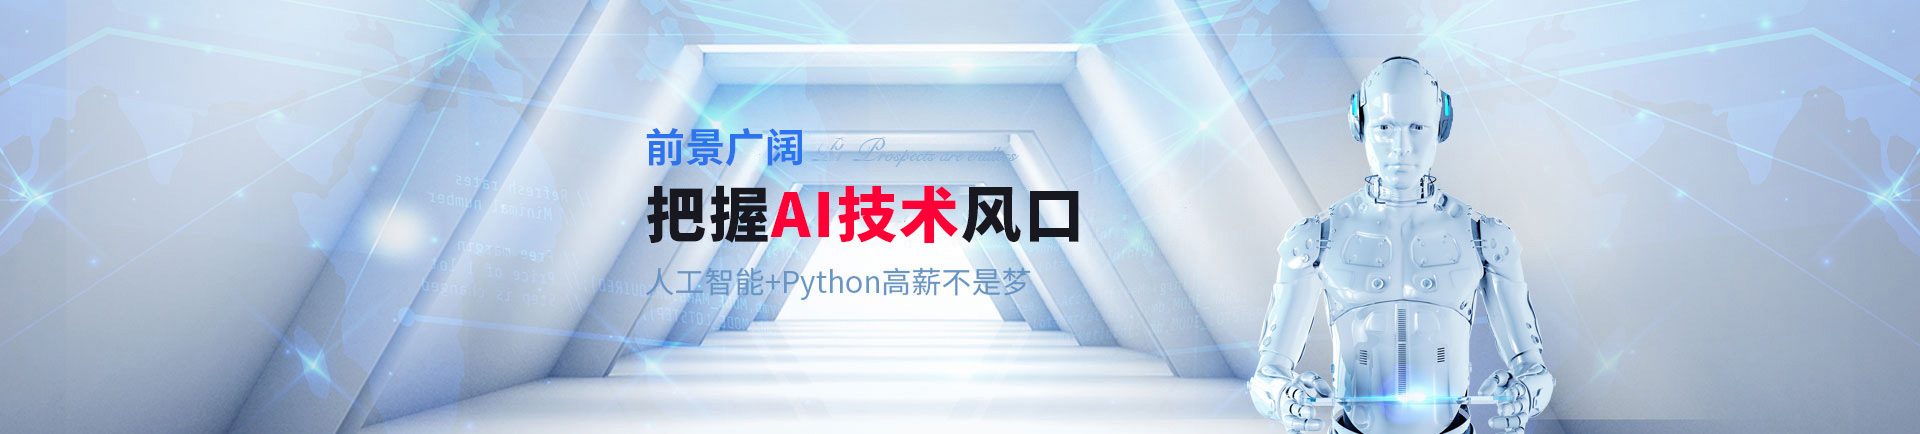 登顶AI技术风口巅峰 人工智能+Python高薪不是梦-shanghai